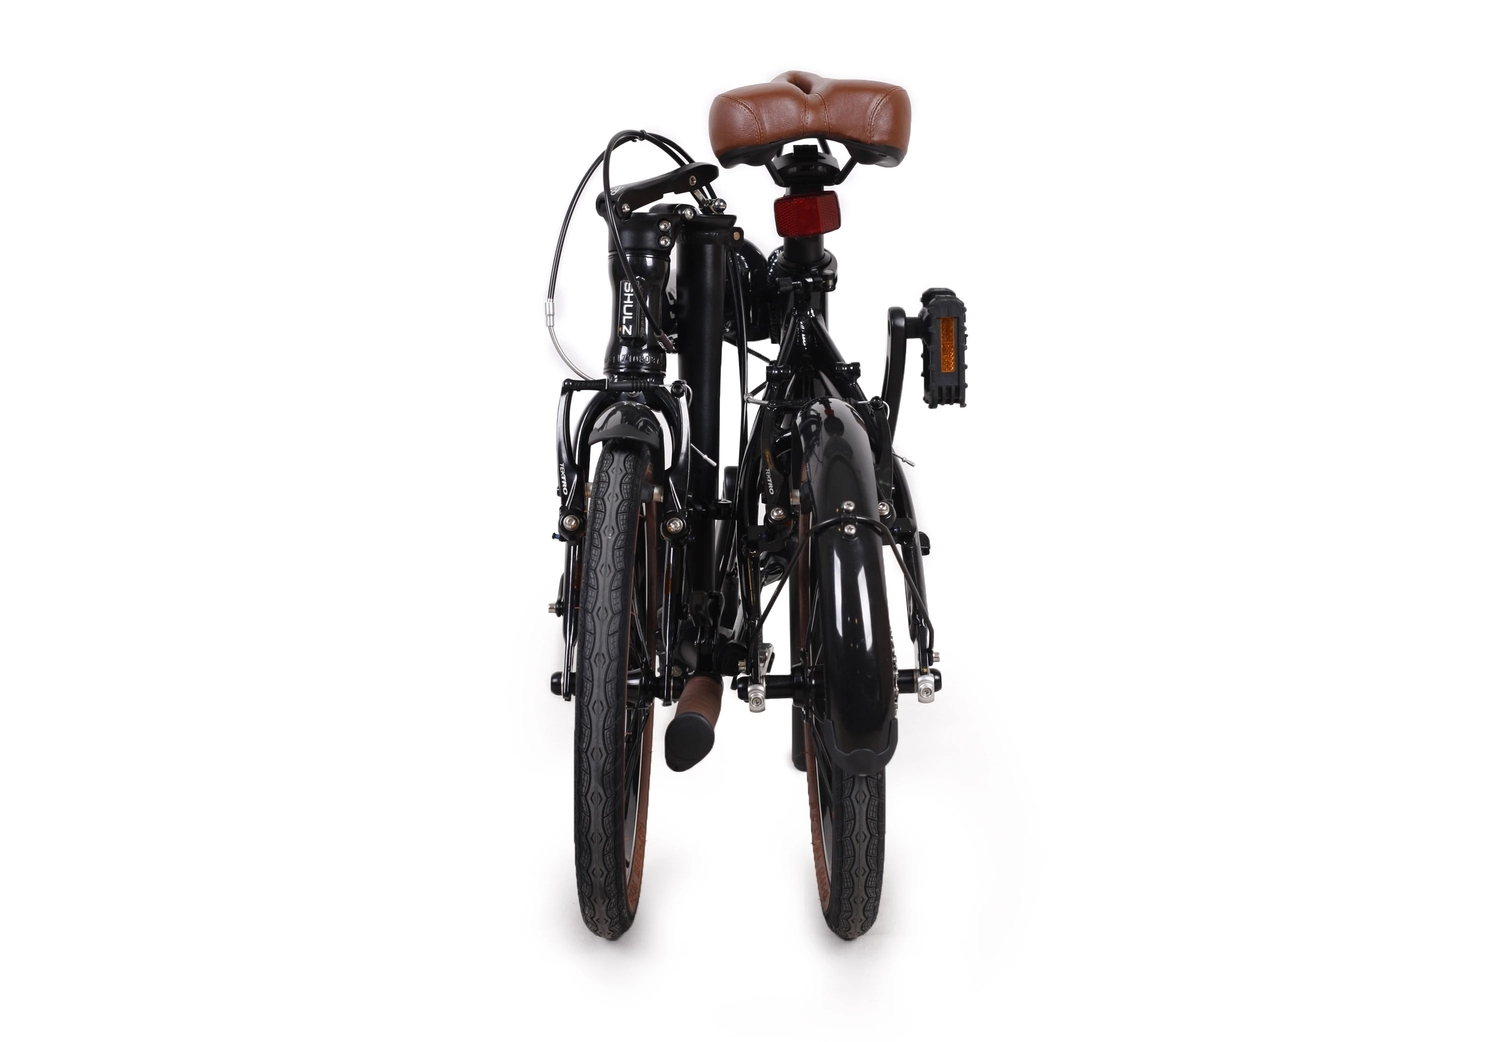 Складной велосипед Shulz Hopper, год 2023, цвет Черный